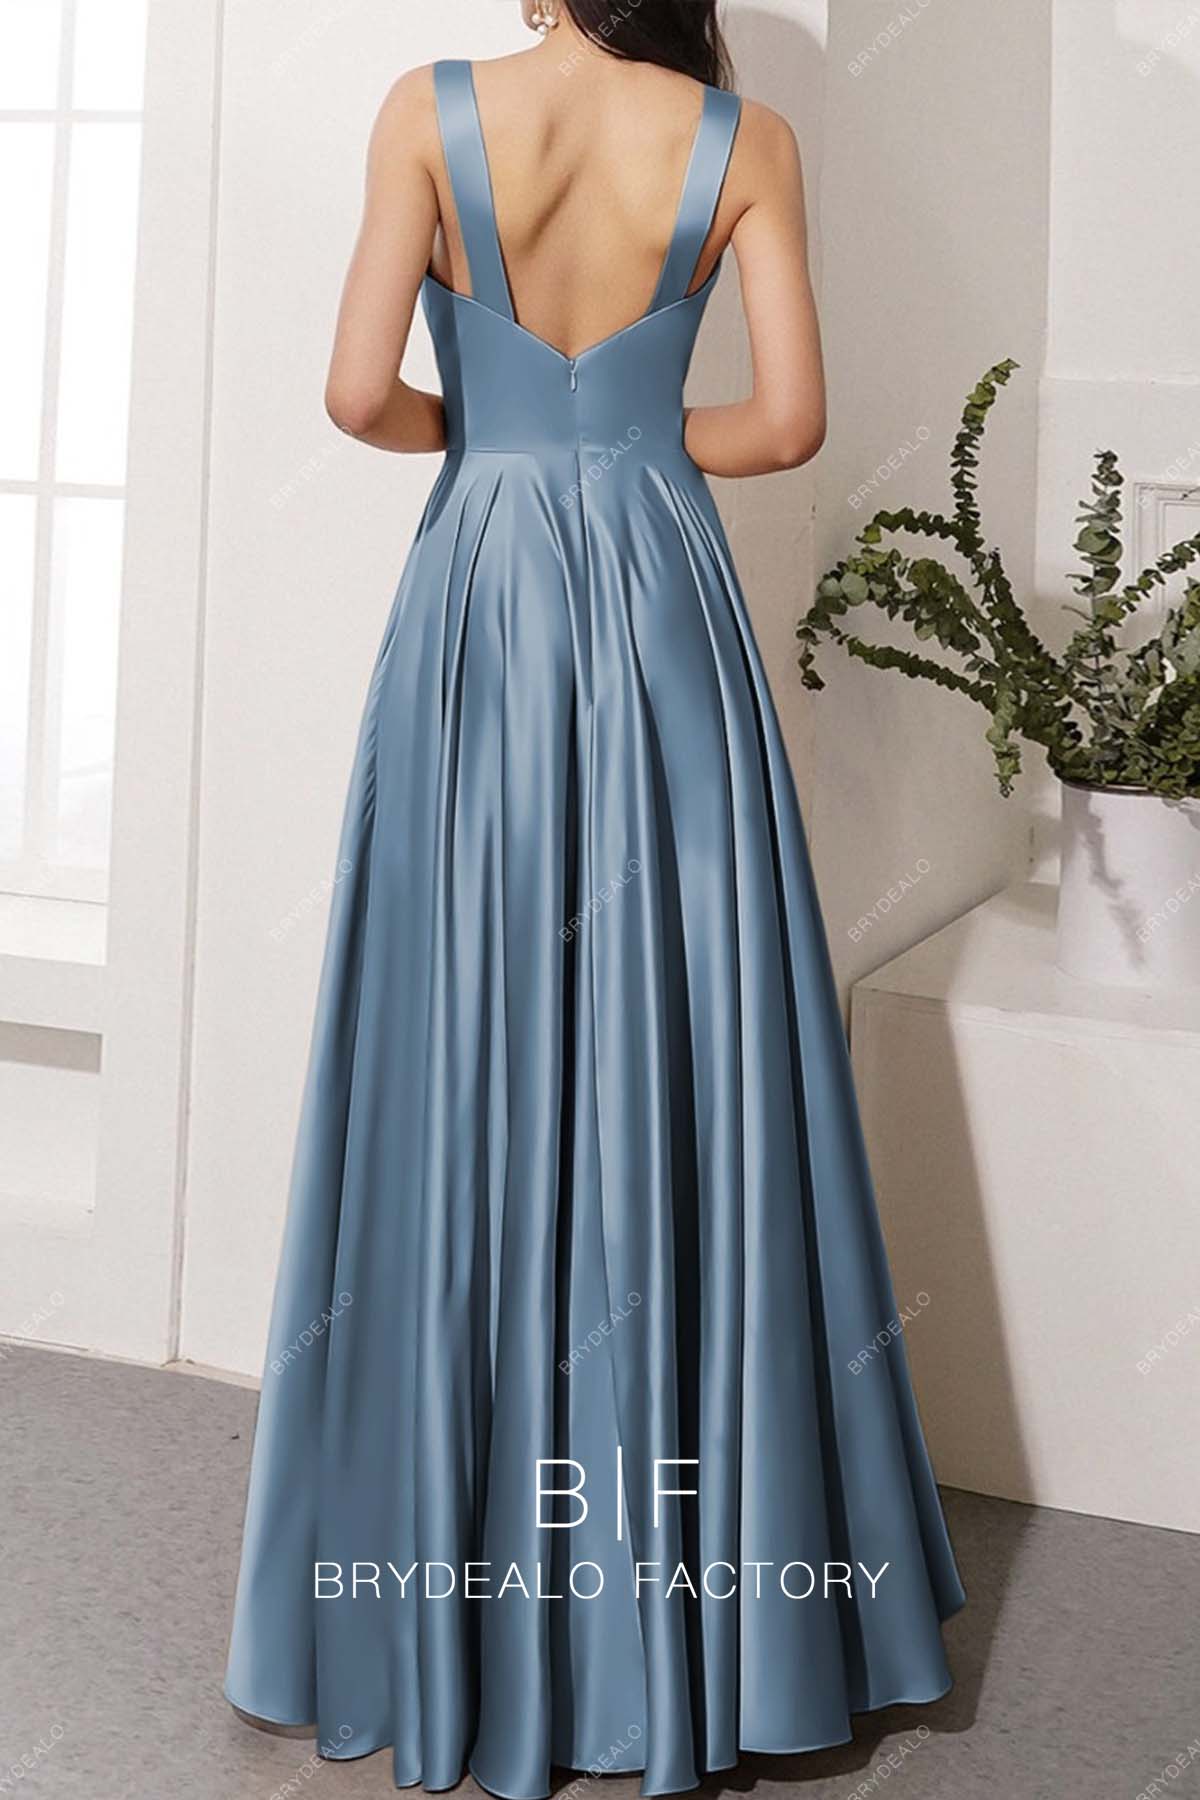 A-line floor length dusty blue bridesmaid dress